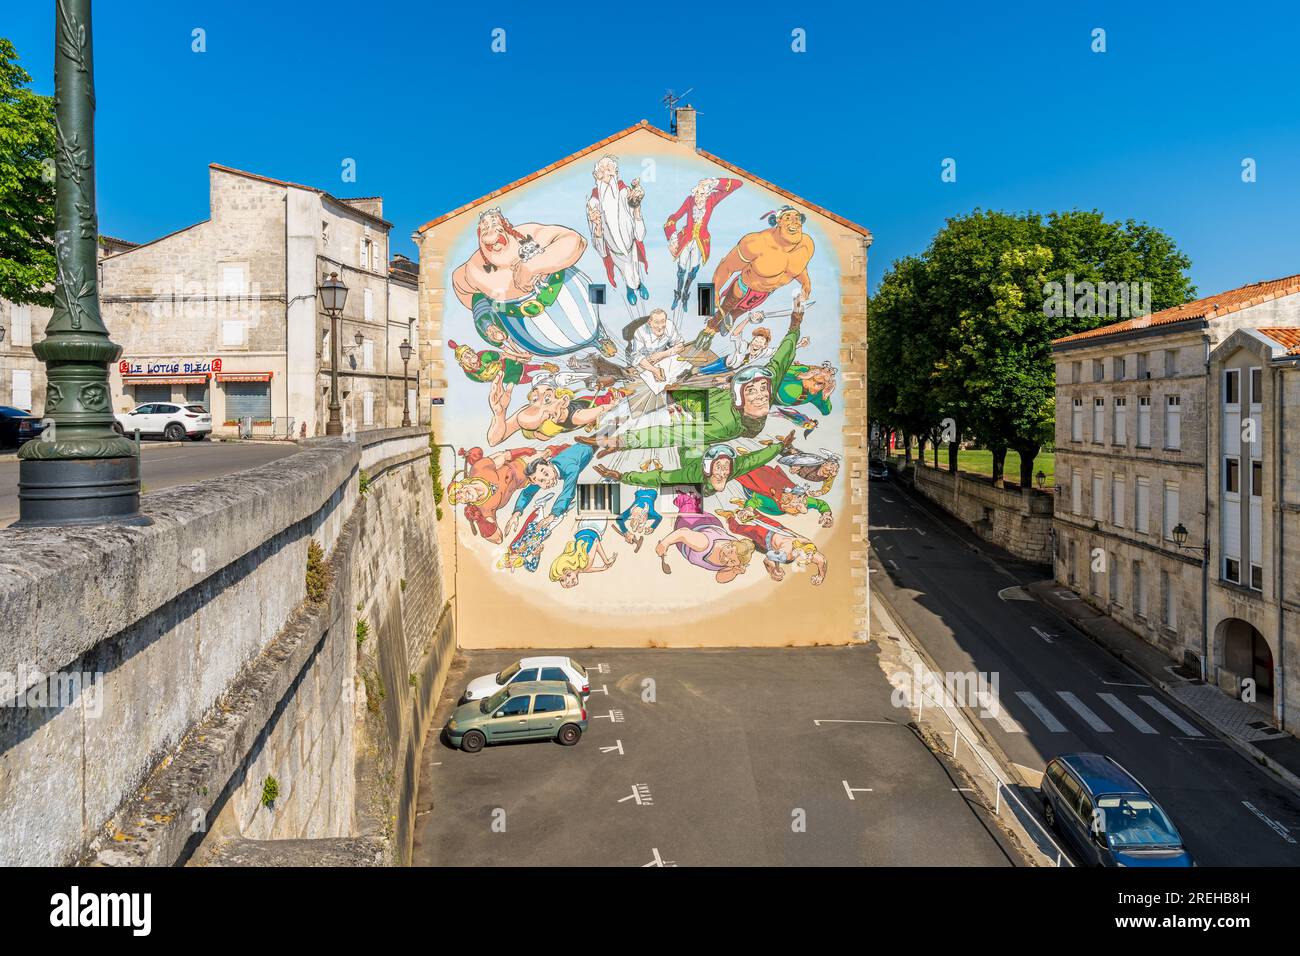 Murale gigante dedicato al fumettista Albert Uderzo ad Angouleme, Francia. Uderzo è meglio conosciuto per aver realizzato la serie Asterix Comic Book. Foto Stock